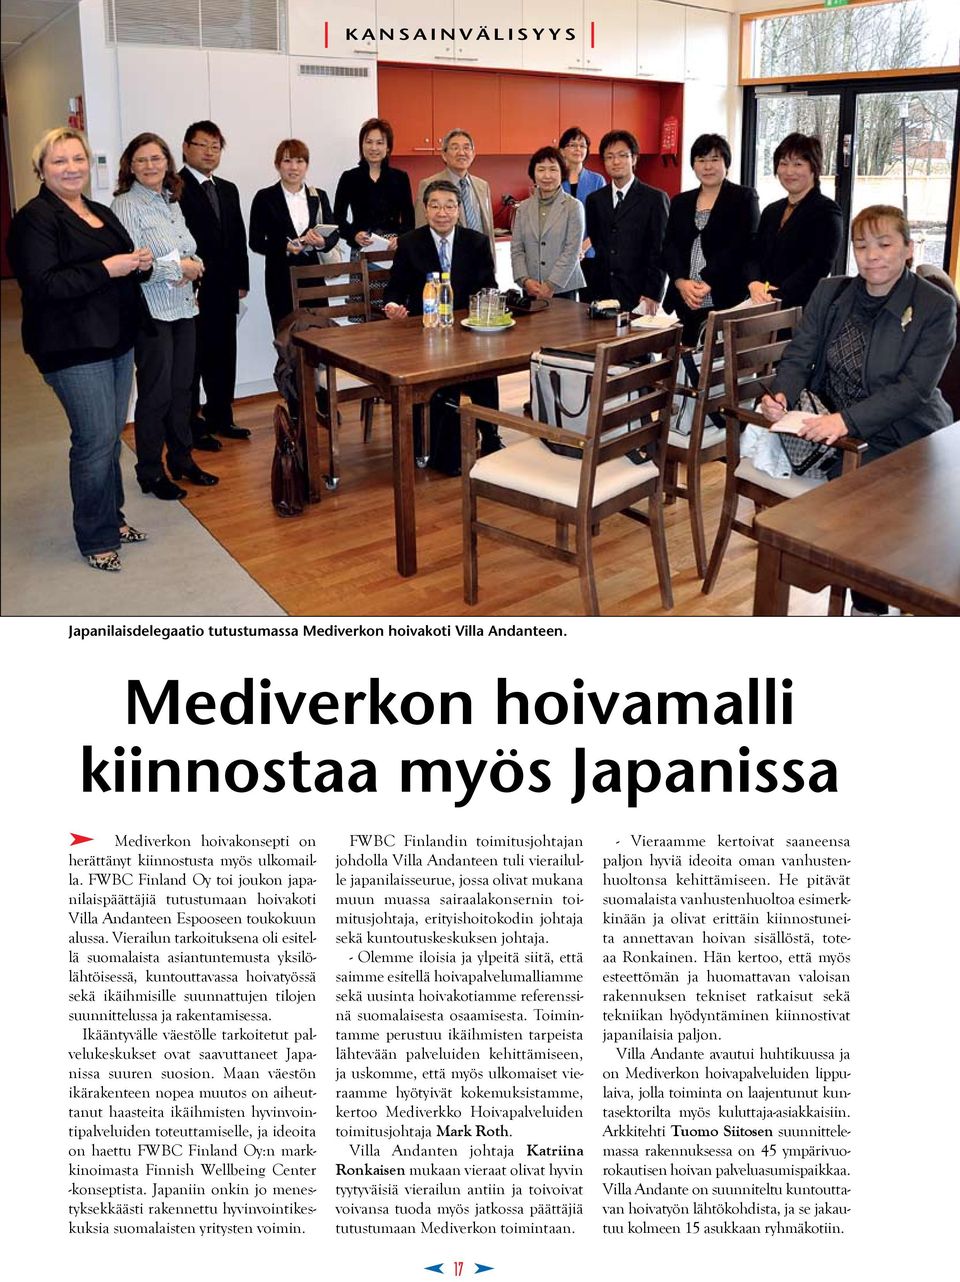 FWBC Finland Oy toi joukon japanilaispäättäjiä tutustumaan hoivakoti Villa Andanteen Espooseen toukokuun alussa.